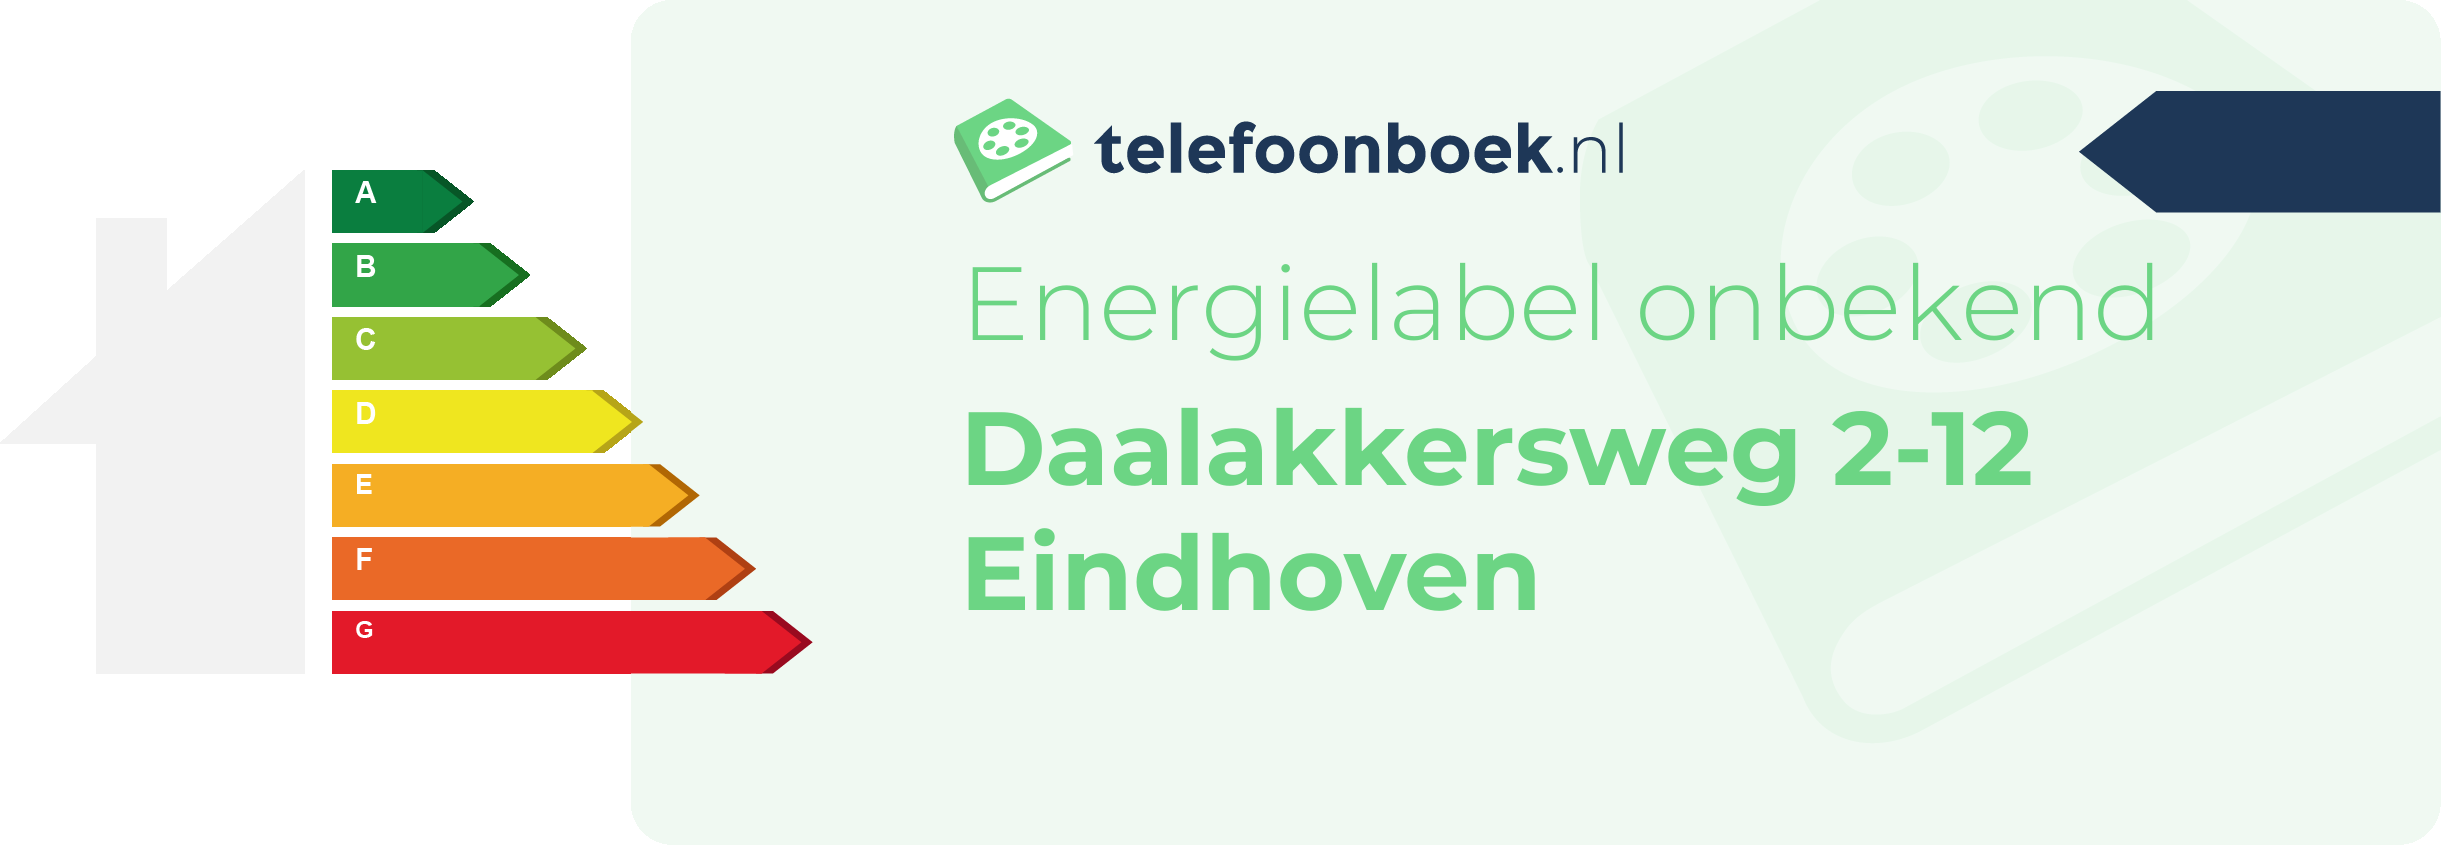 Energielabel Daalakkersweg 2-12 Eindhoven